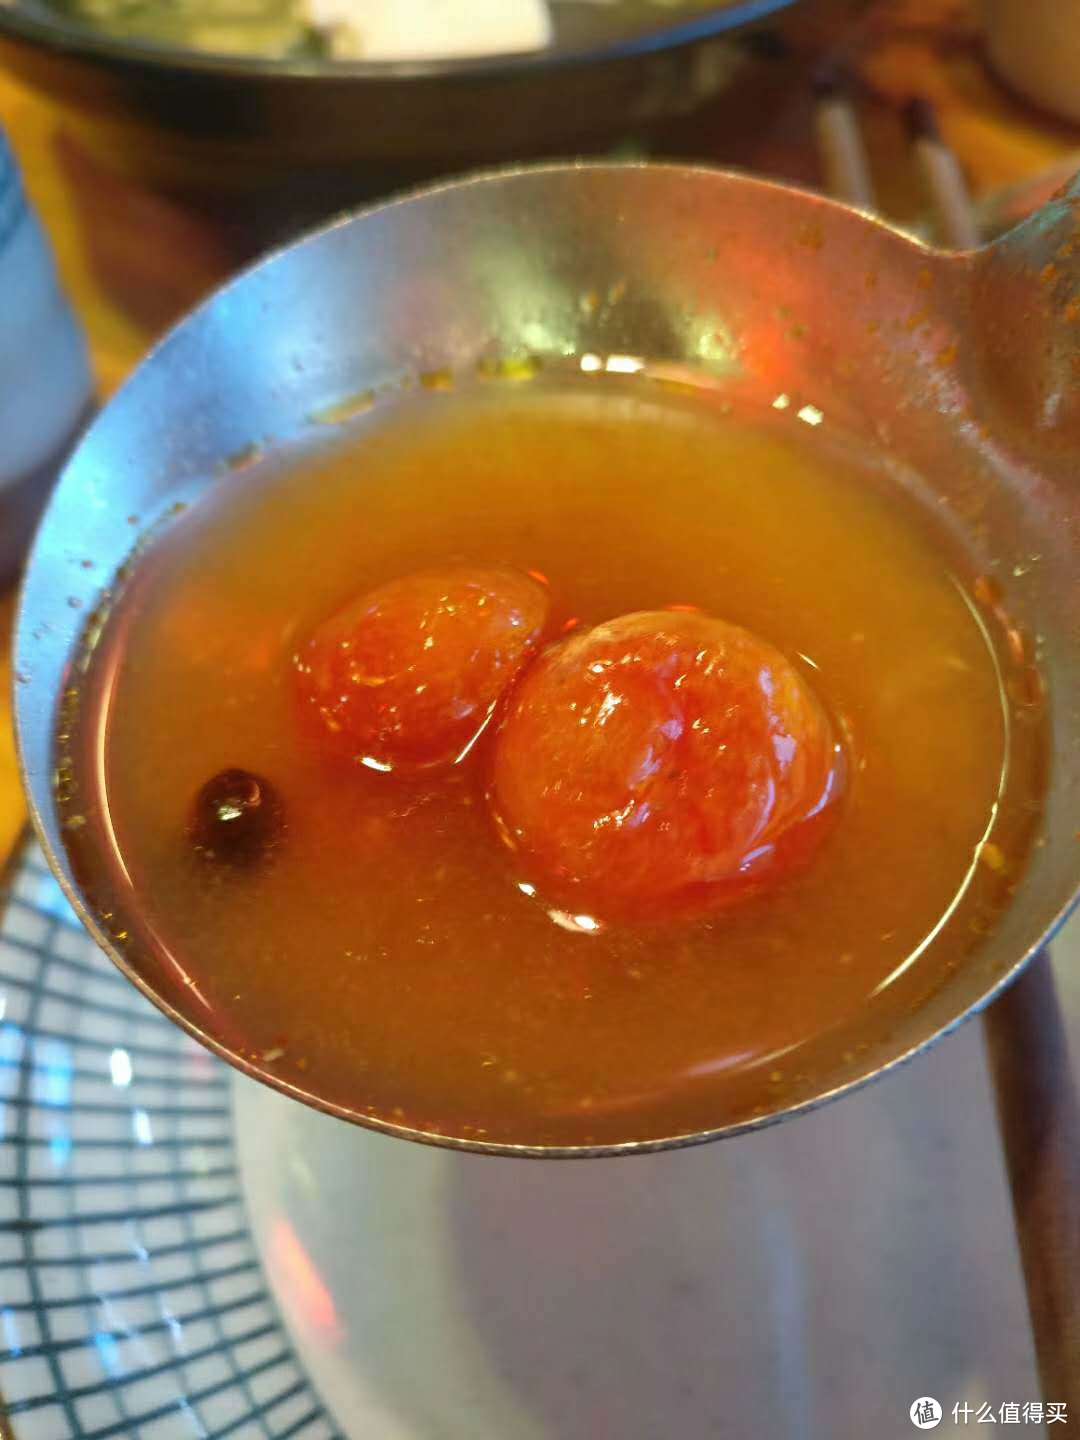 野生小番茄经过发酵，有种特殊的酸香味